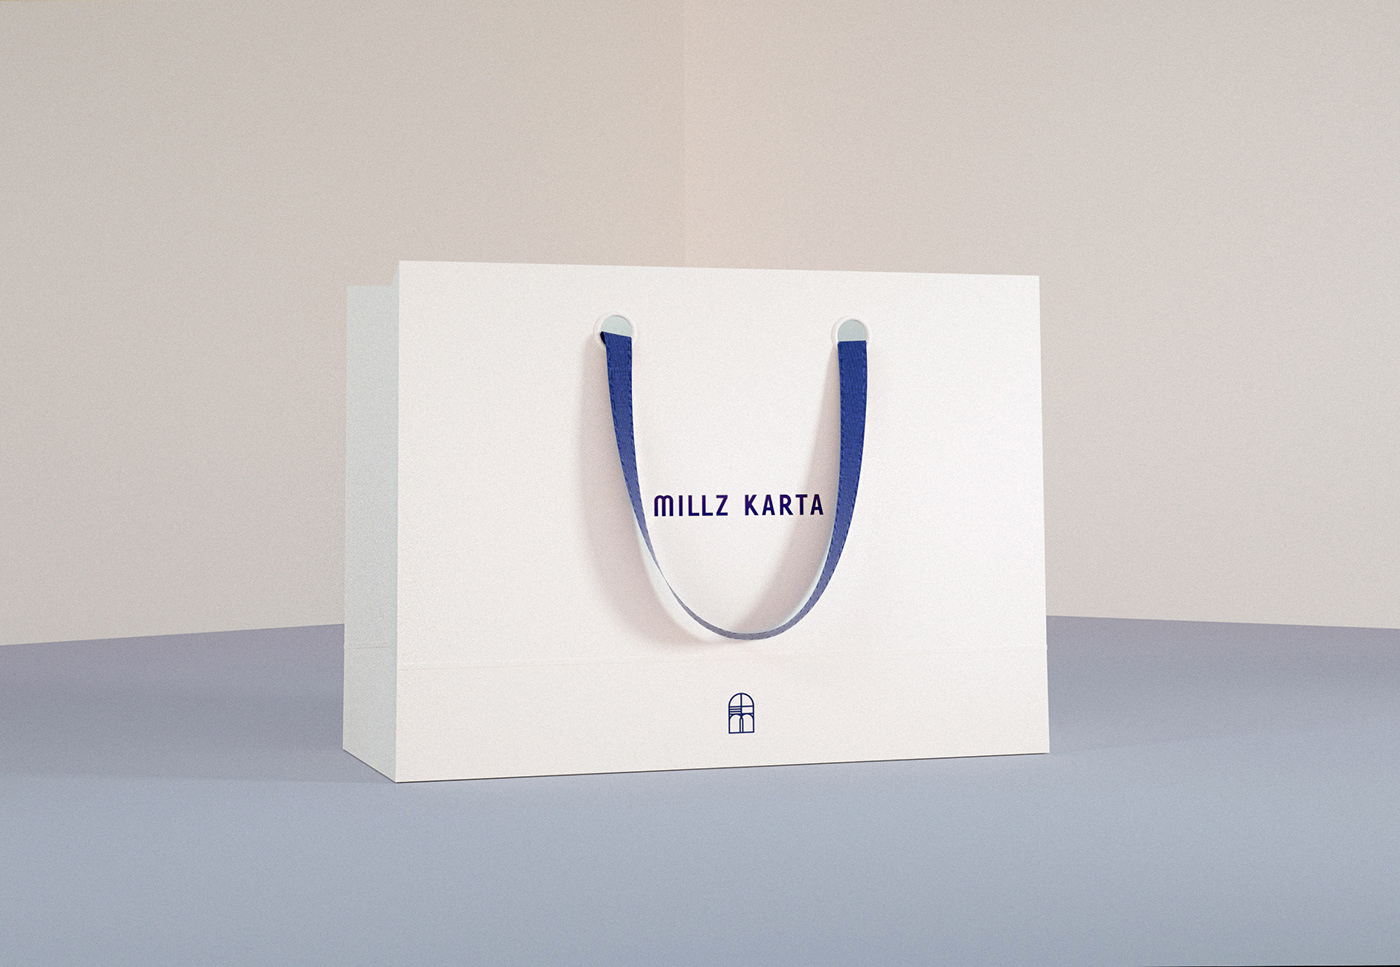 Millz Karta时尚品牌视觉形象设计